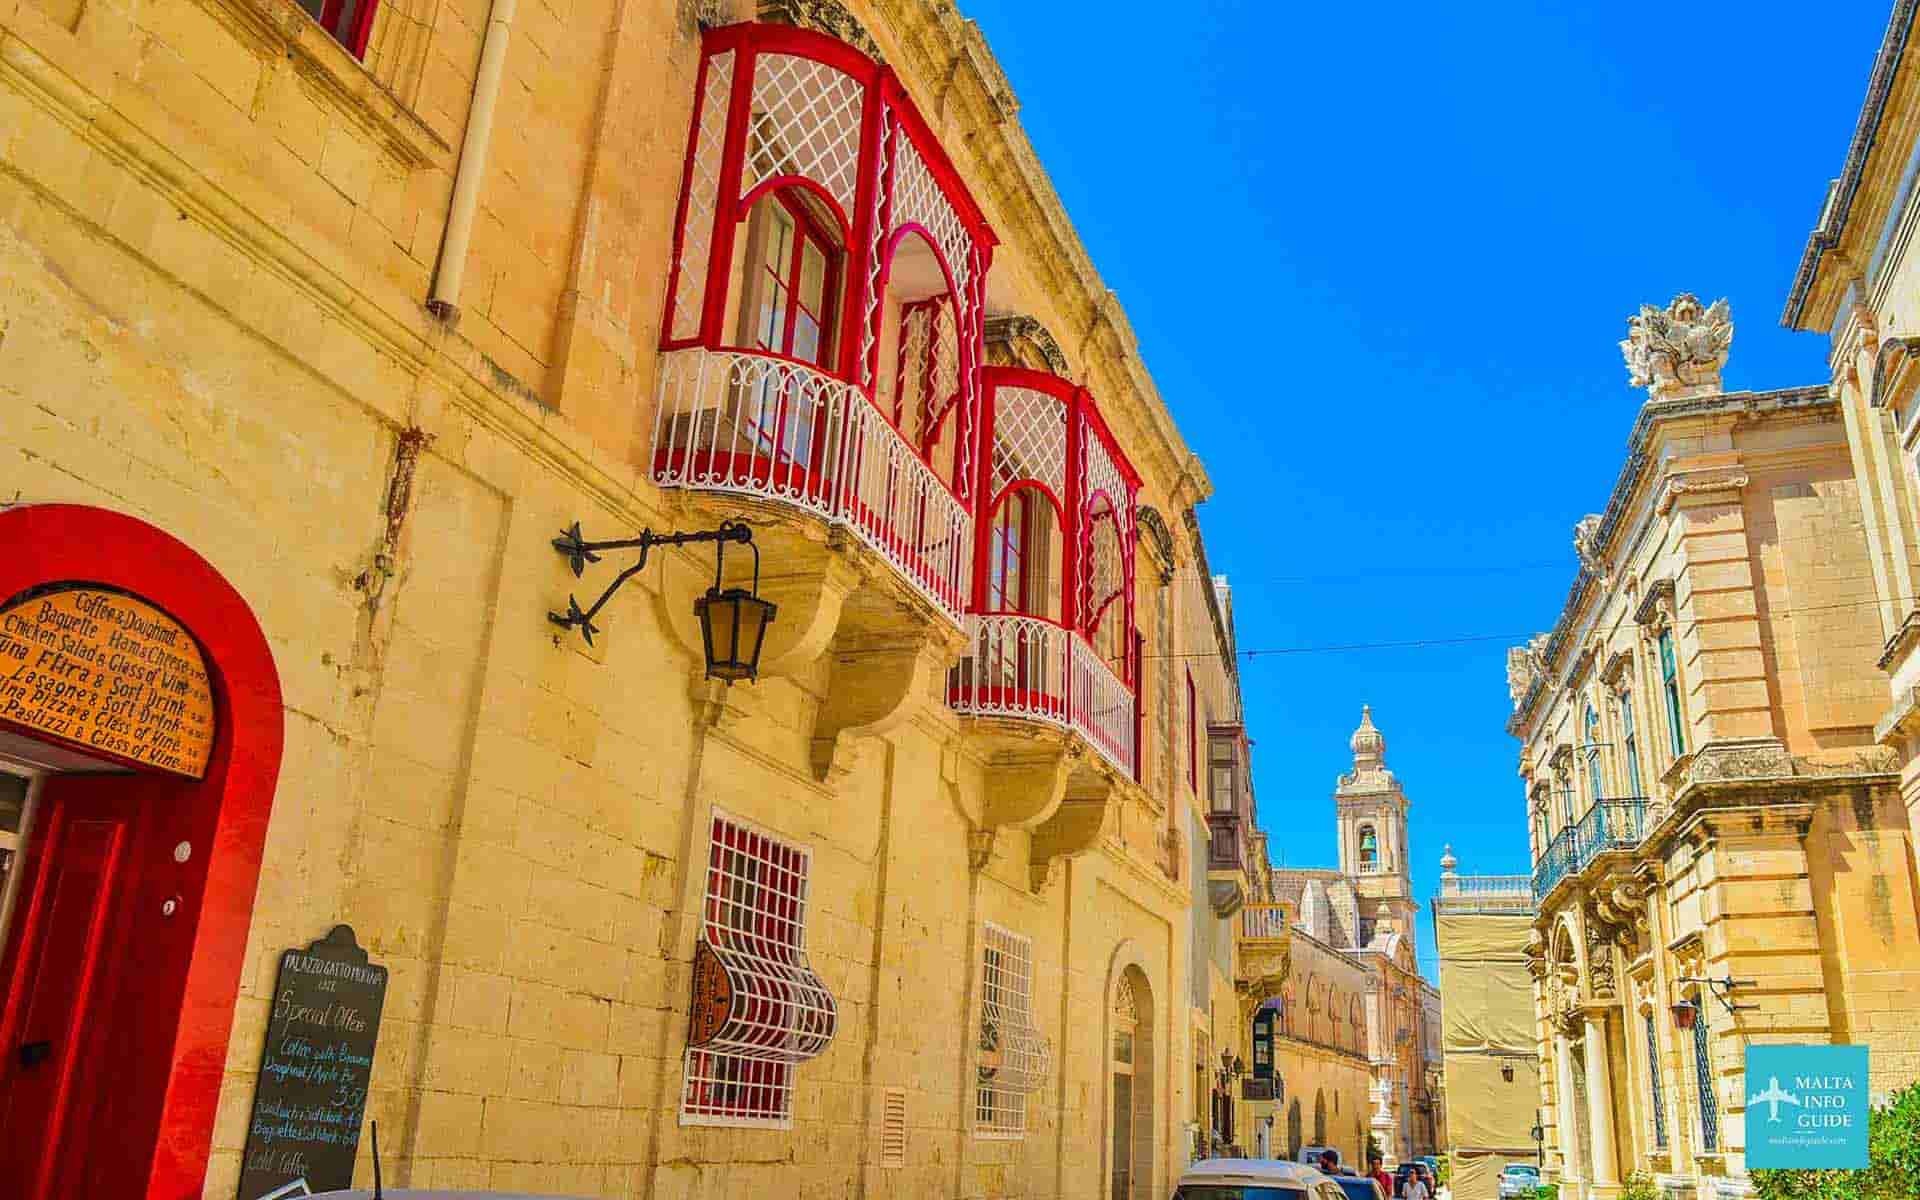 Palaces and houses at Mdina Malta.